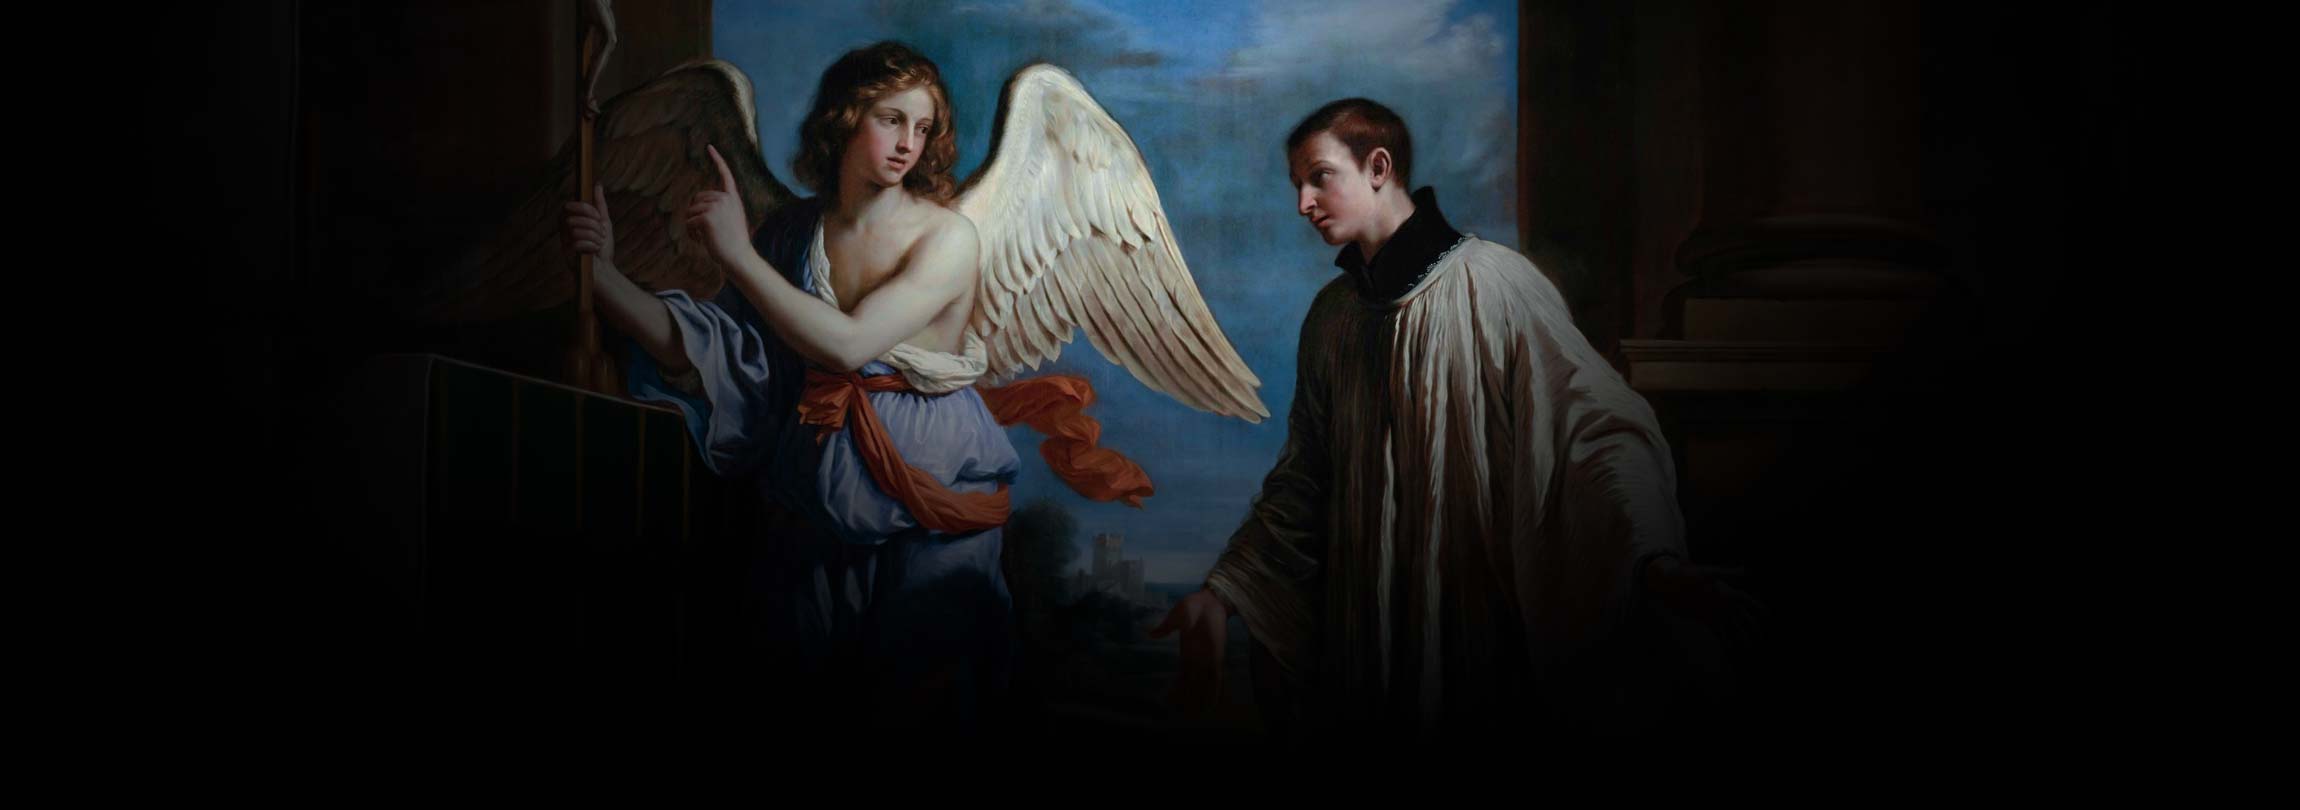 Um jovem em meio aos anjos do Céu